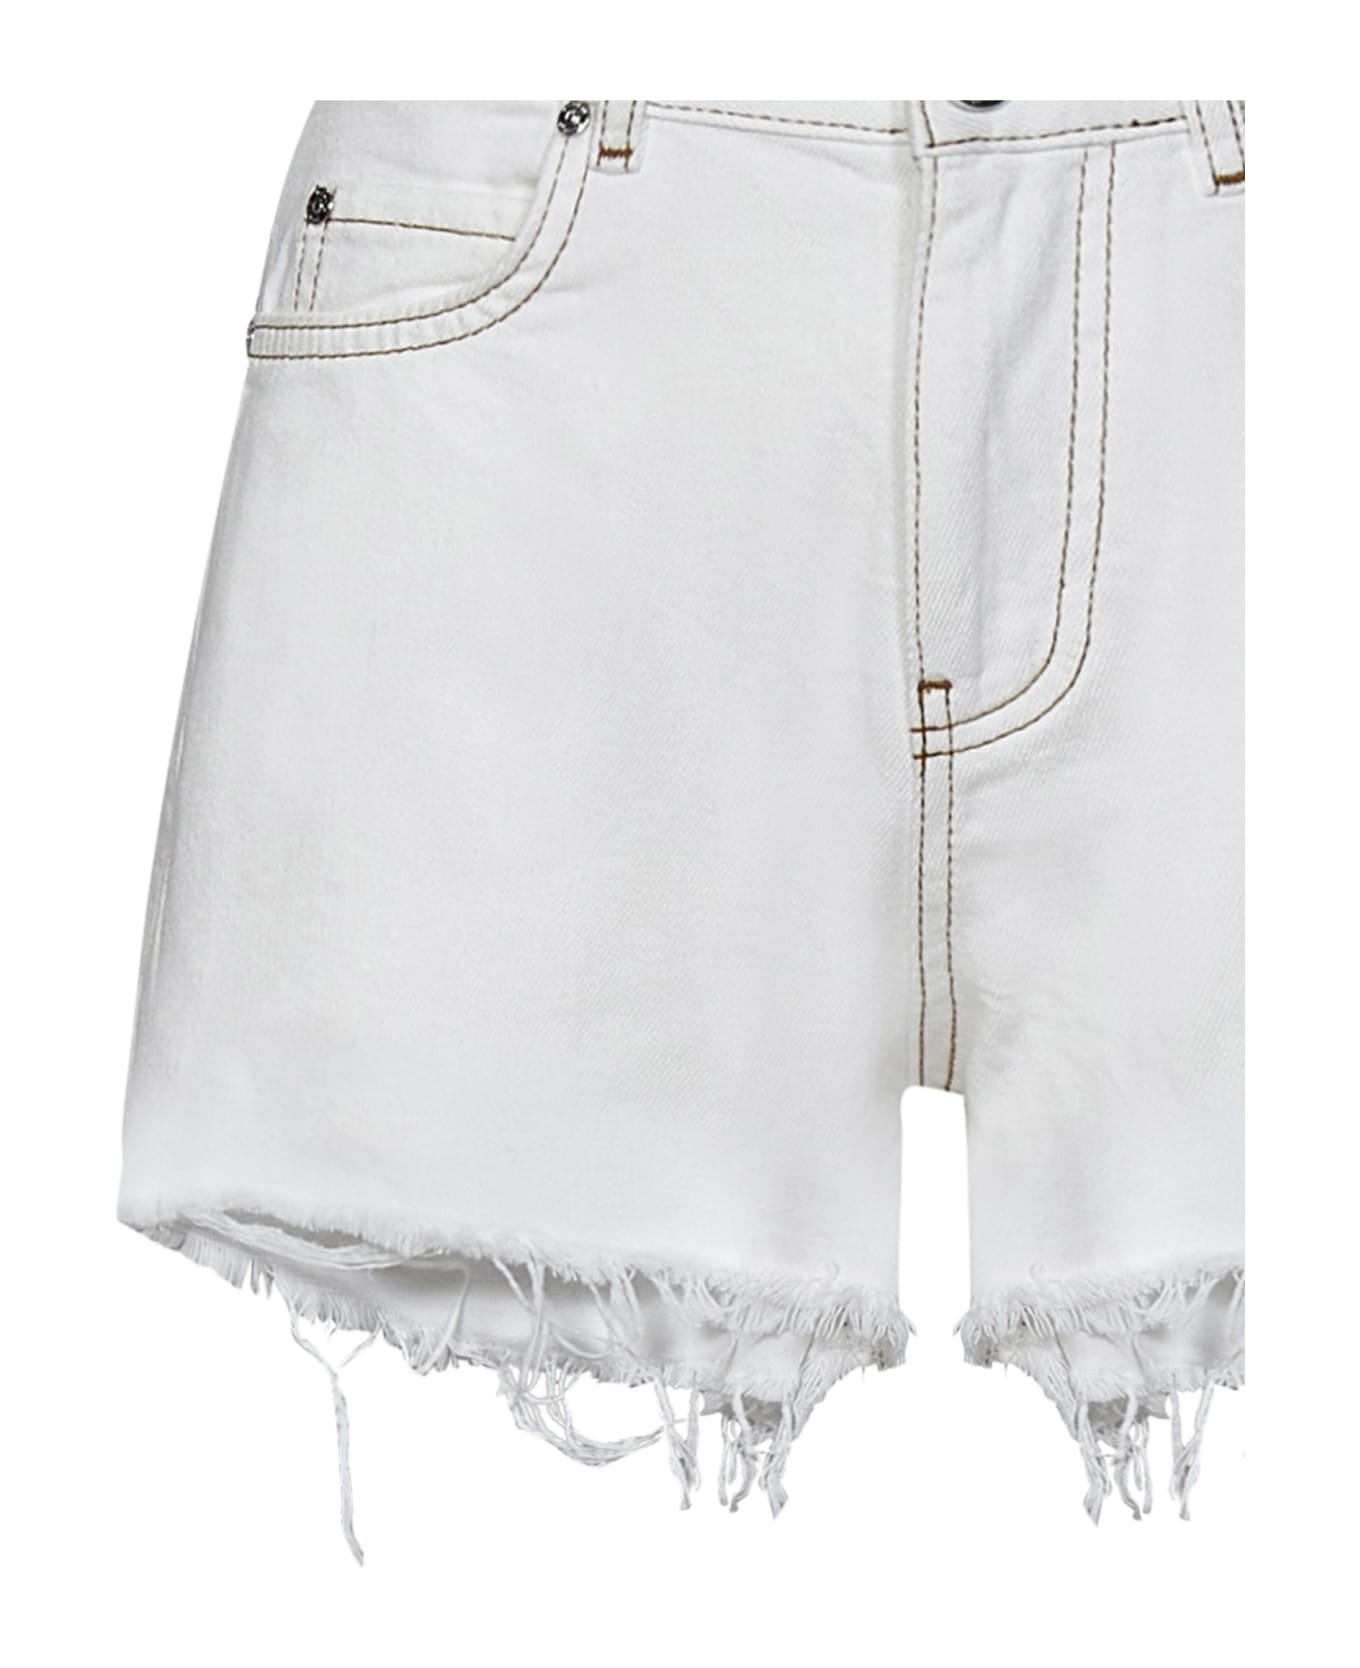 Pinko Honey Shorts - White ショートパンツ